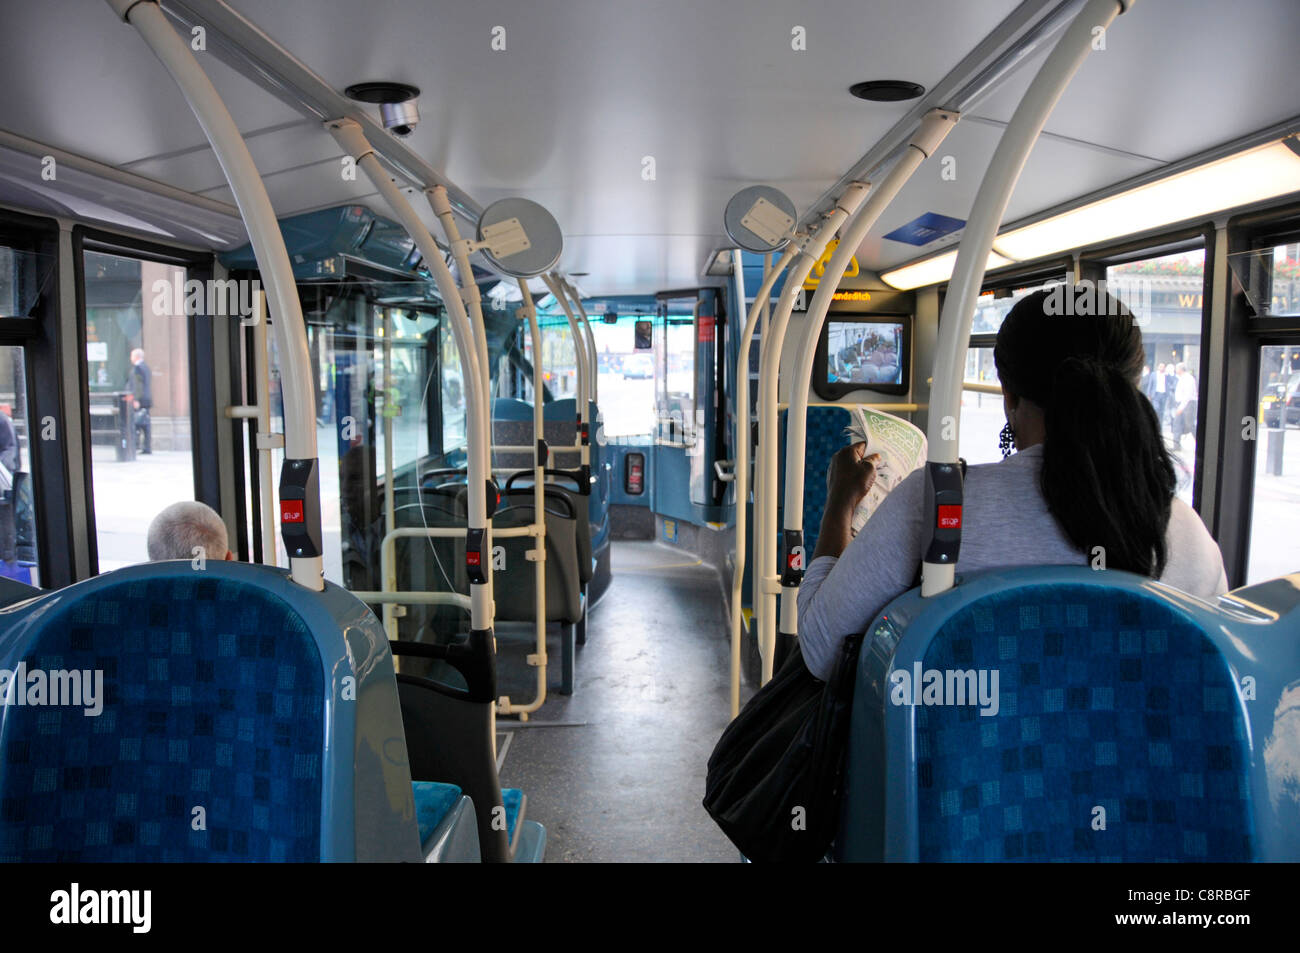 Innenraum des öffentlichen Nahverkehrs Eindeckbus & Passagiere sitzen innen Rückansicht Frau, die Sicherheit CCTV-Bildschirm vor London England Großbritannien ansieht Stockfoto